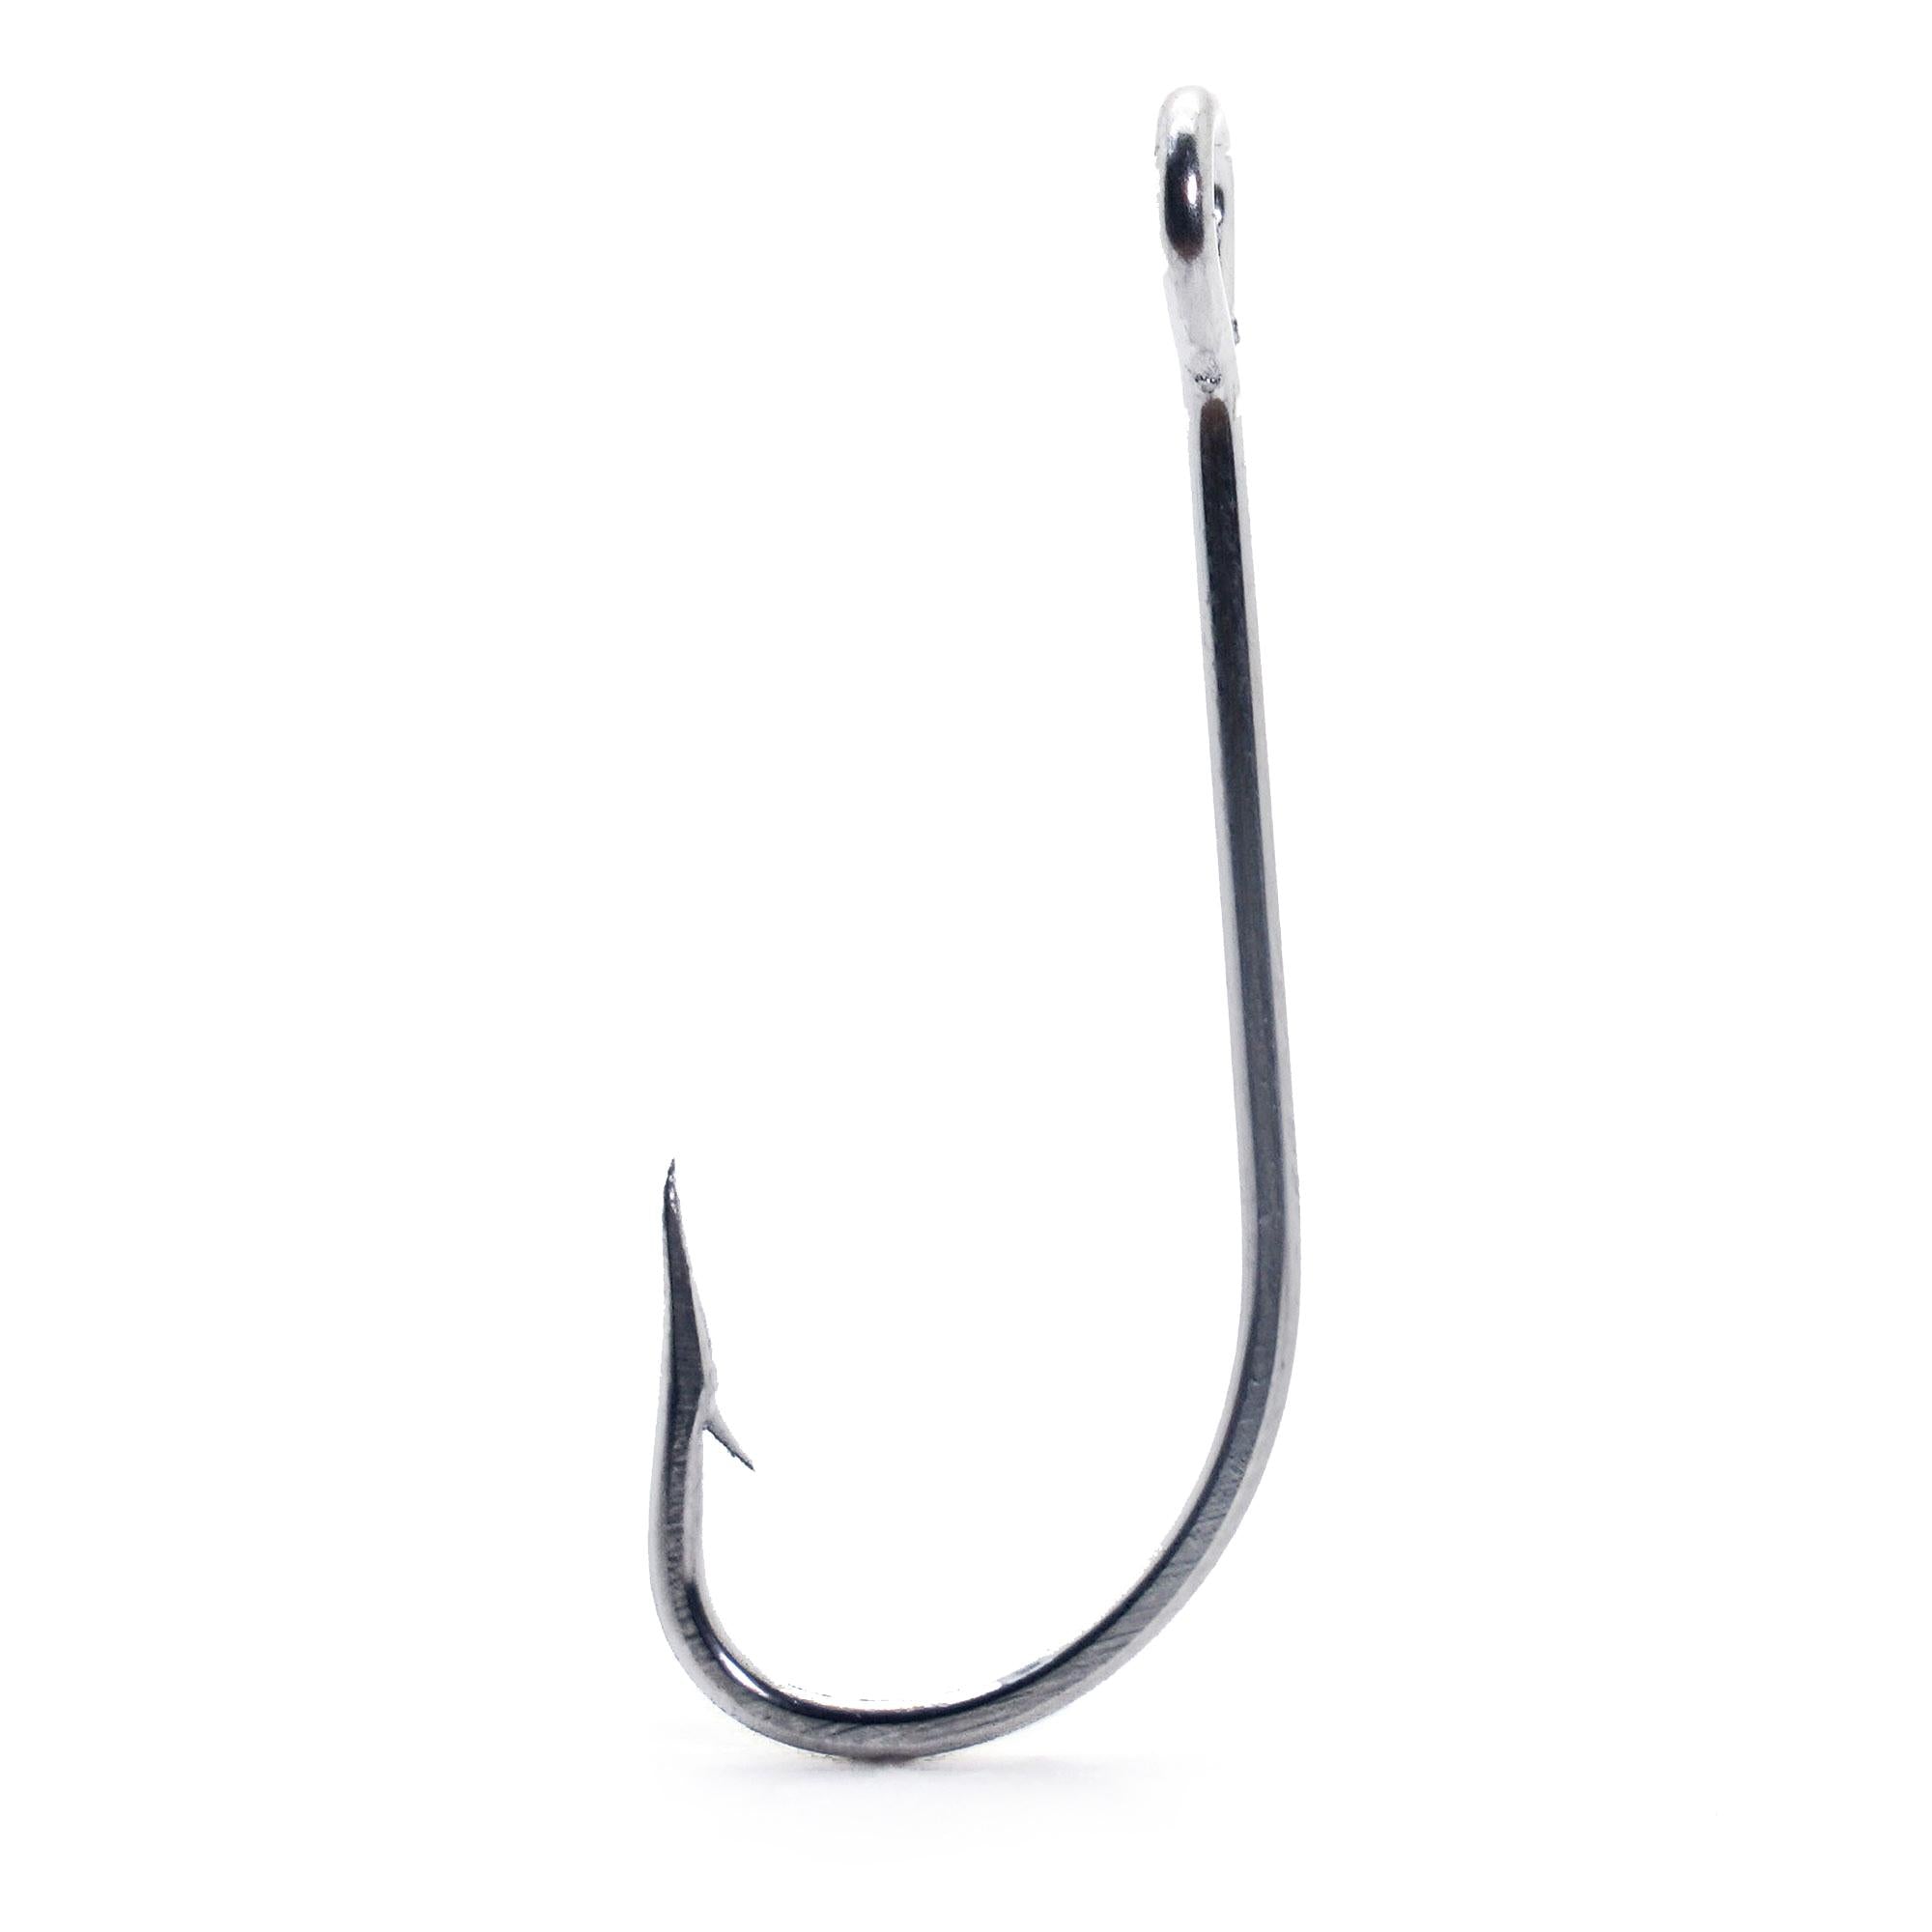 VERDDE Fishing Hooks, Gourd Type Stainless Steel Hook Swivel Solid